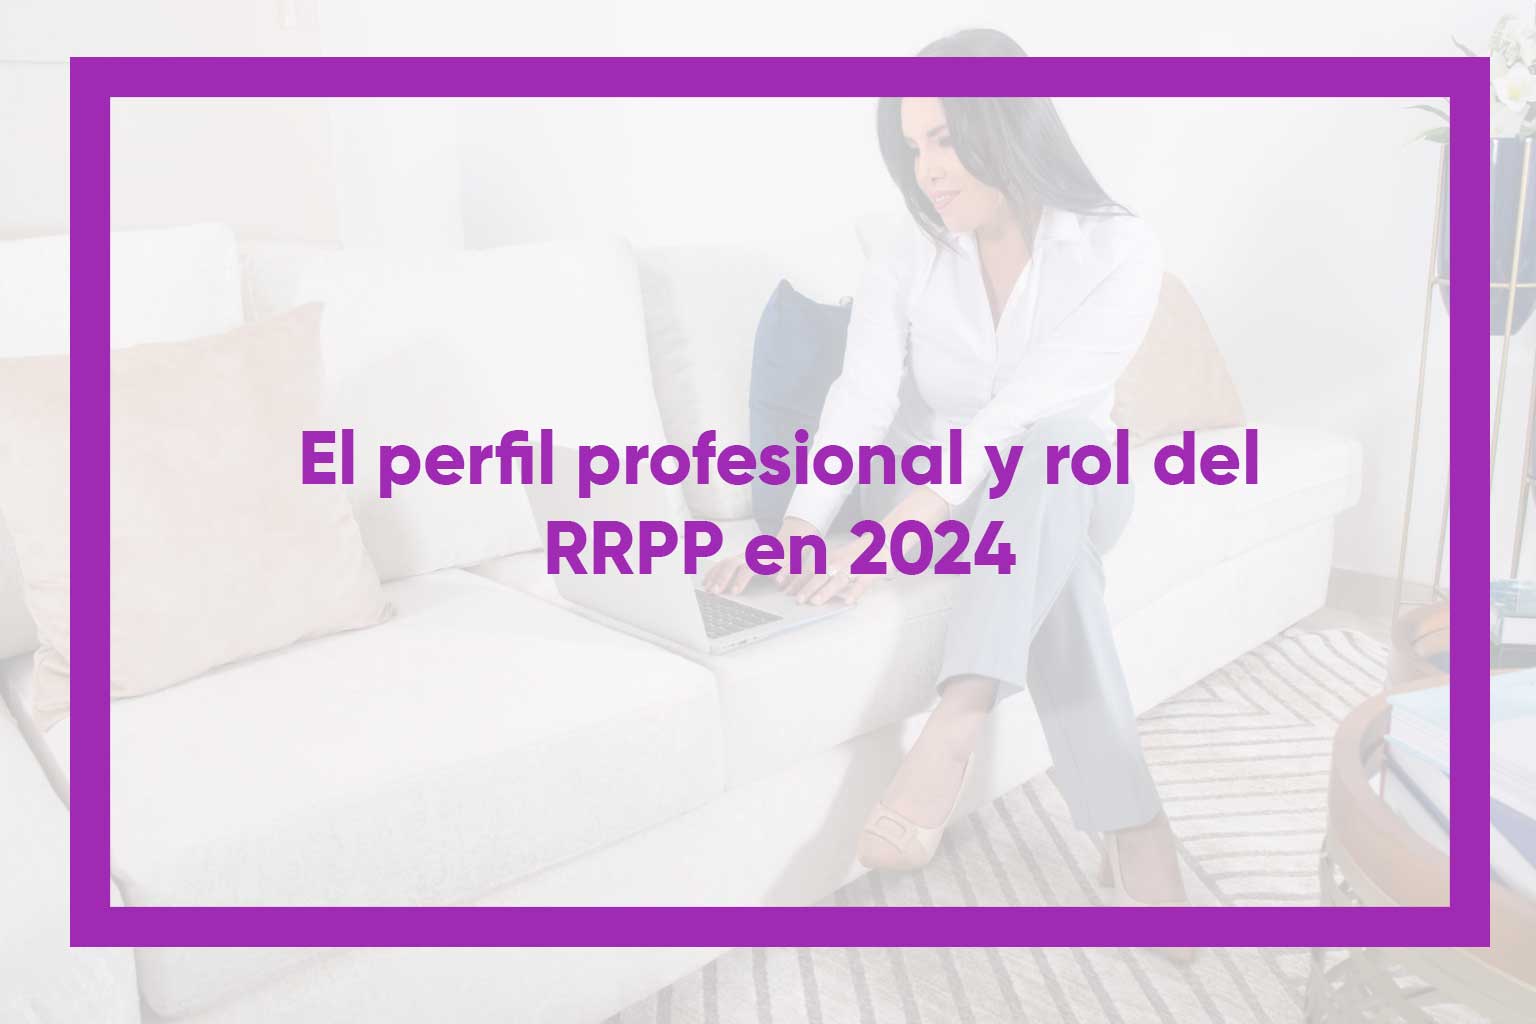 El perfil profesional y rol del RRPP en 2024